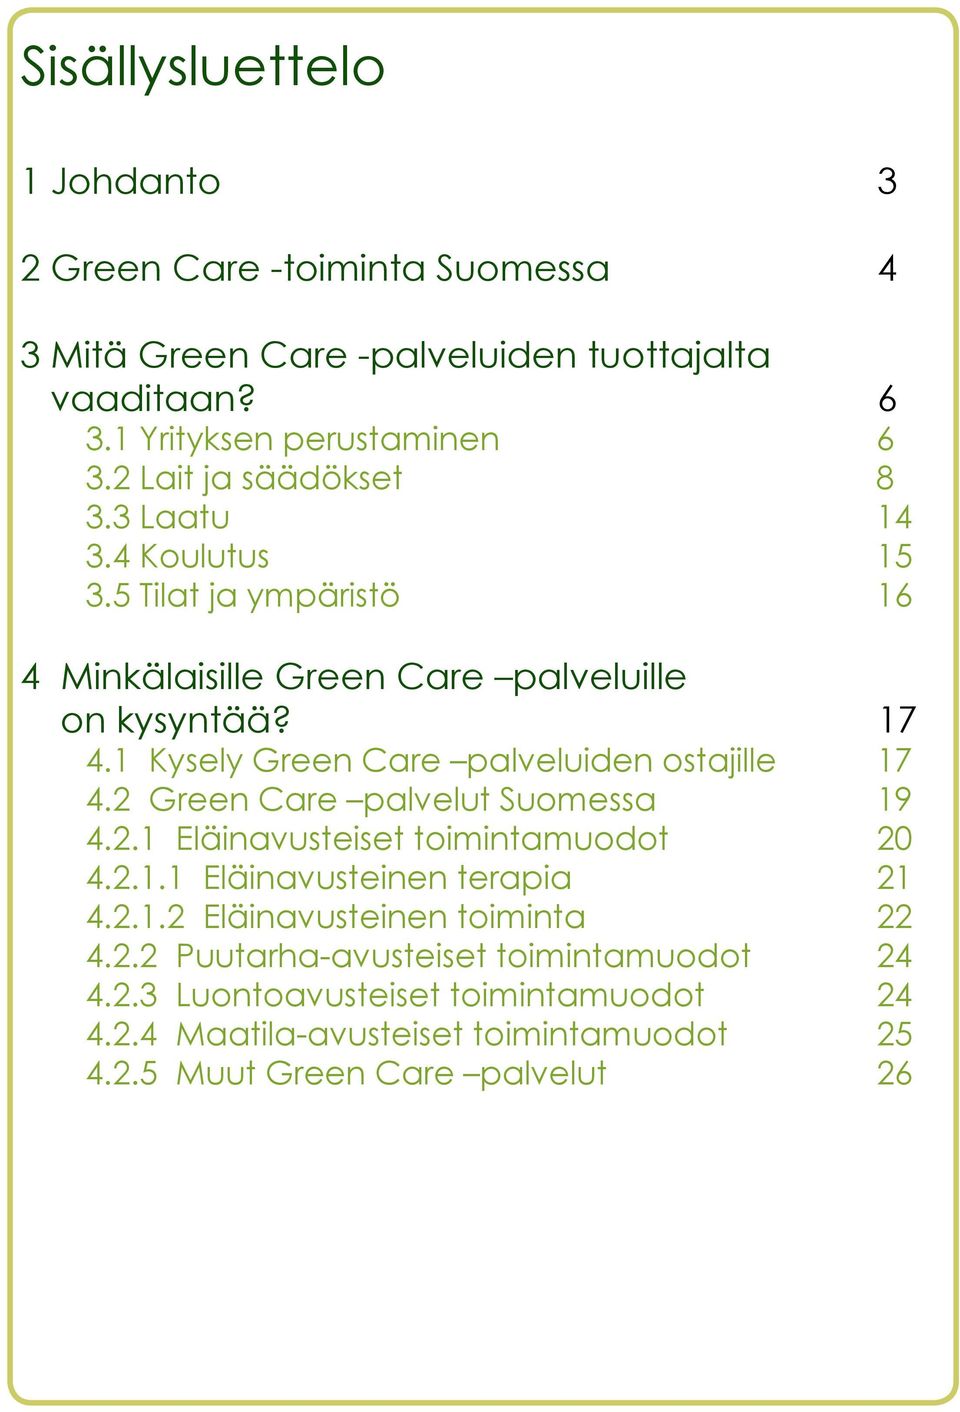 1 Kysely Green Care palveluiden ostajille 17 4.2 Green Care palvelut Suomessa 19 4.2.1 Eläinavusteiset toimintamuodot 20 4.2.1.1 Eläinavusteinen terapia 21 4.2.1.2 Eläinavusteinen toiminta 22 4.